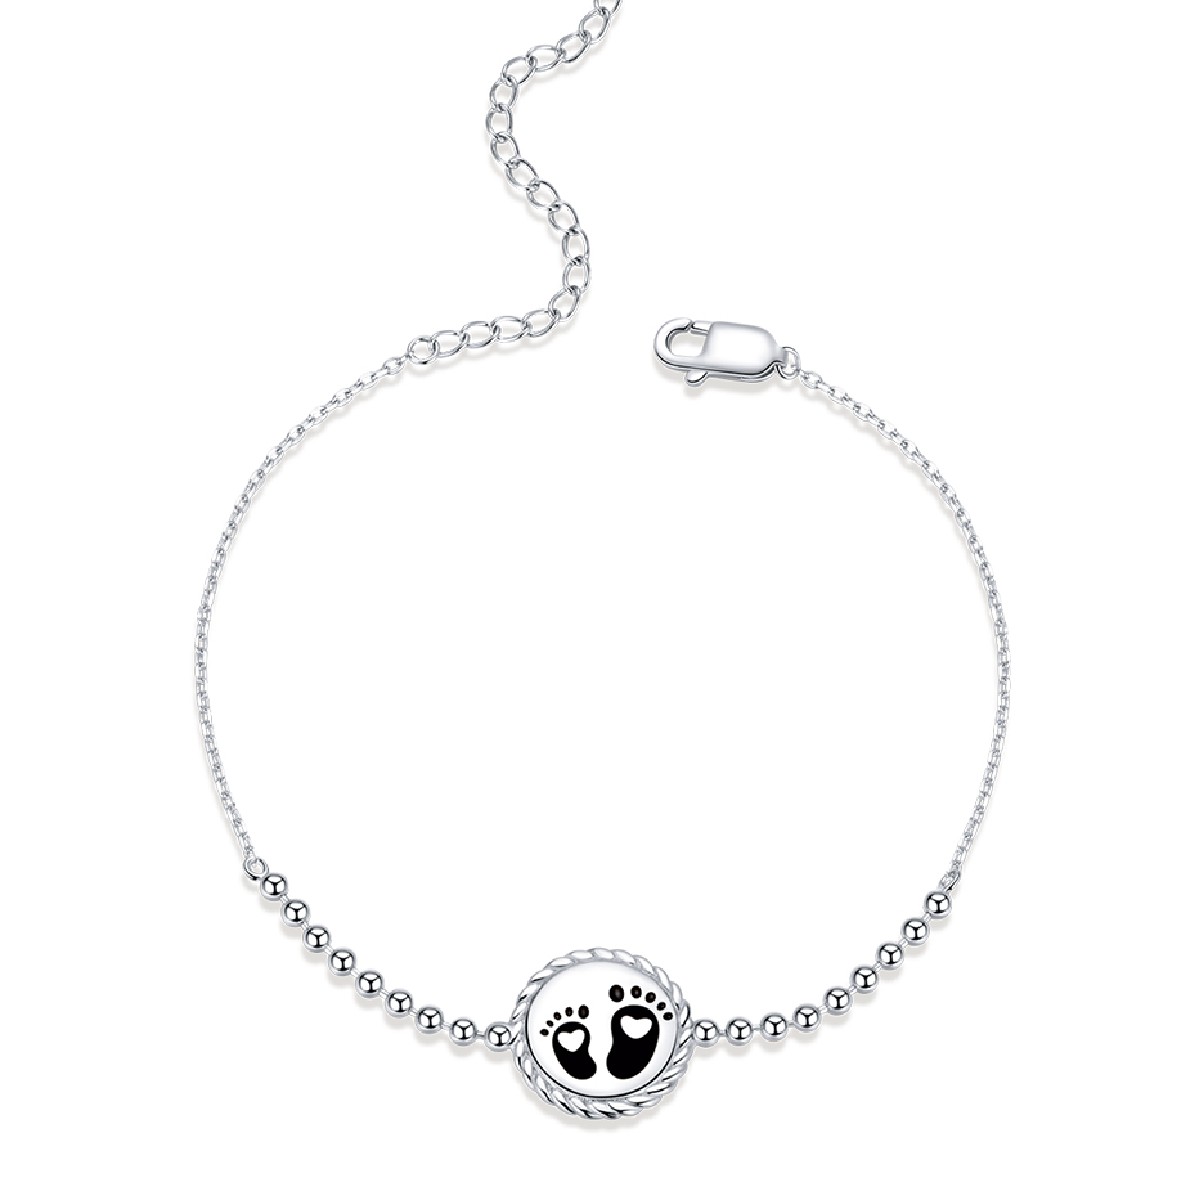 E-shop Linda's Jewelry Strieborný náramok Puto Života Ag 925/1000 INR125